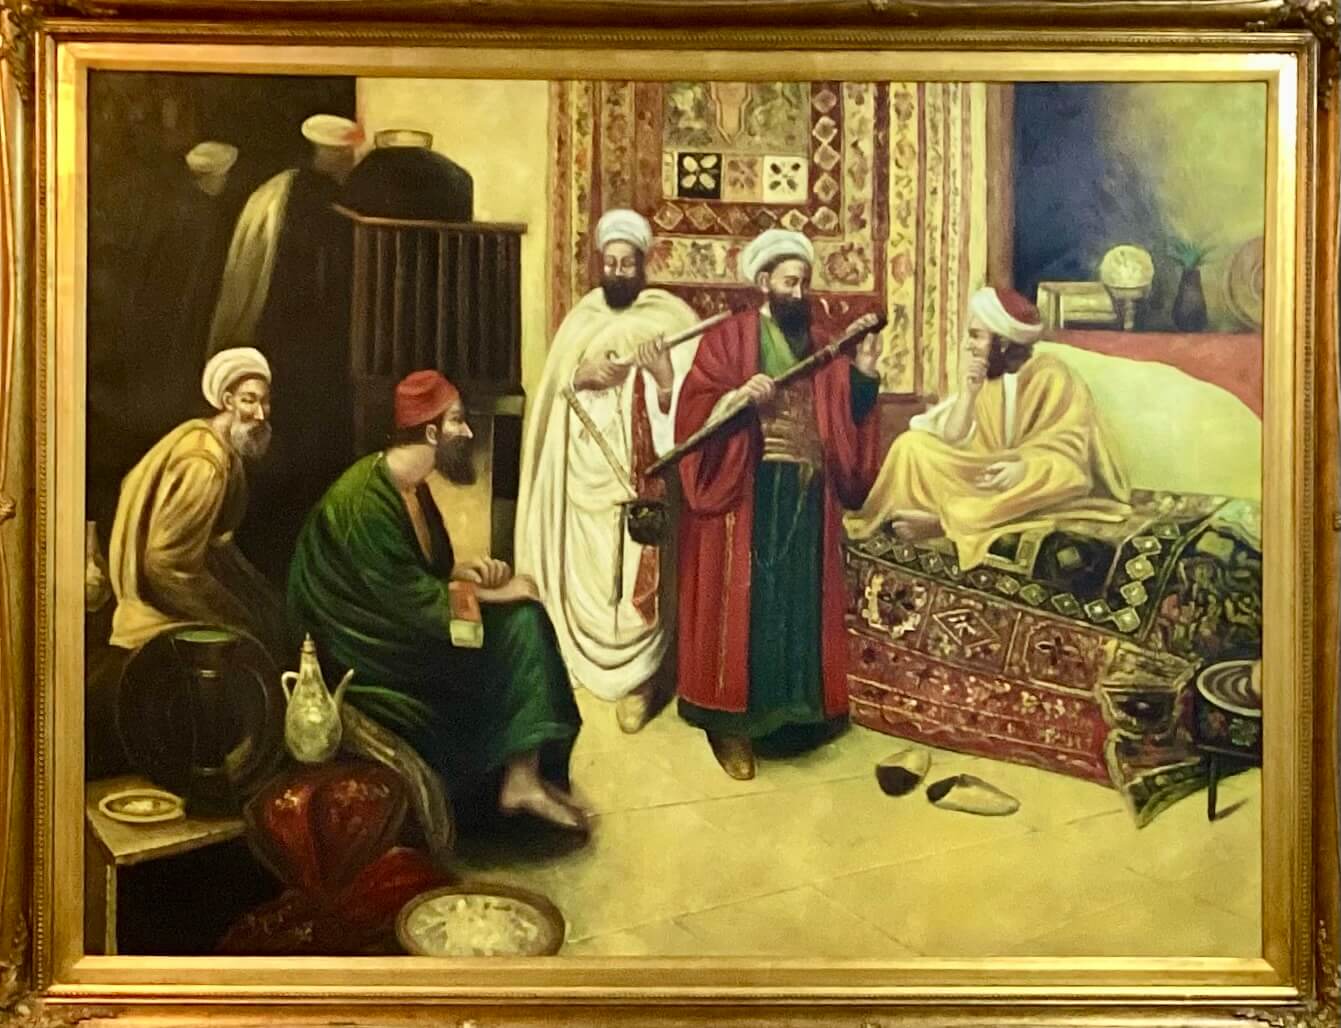 السلطان_و_العازف-The_sultan_and_the_musician